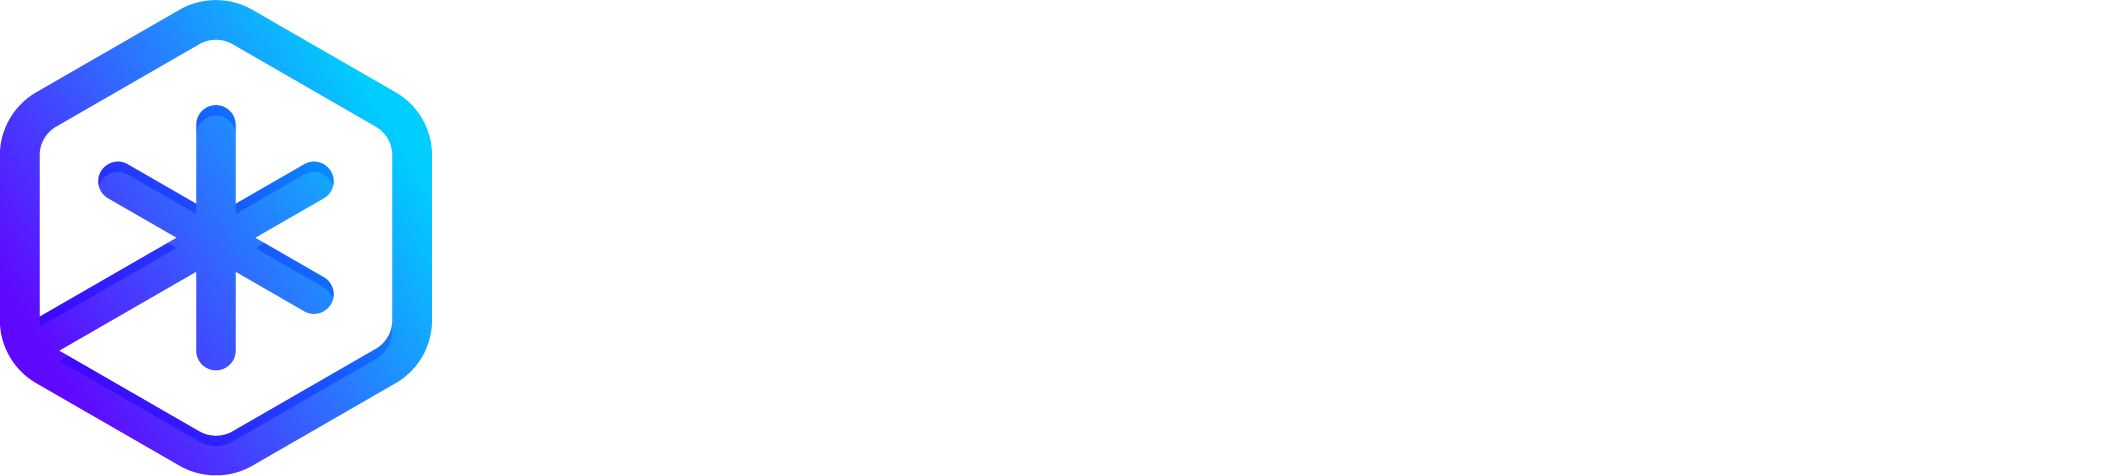 Polygonia Design Suite Blog